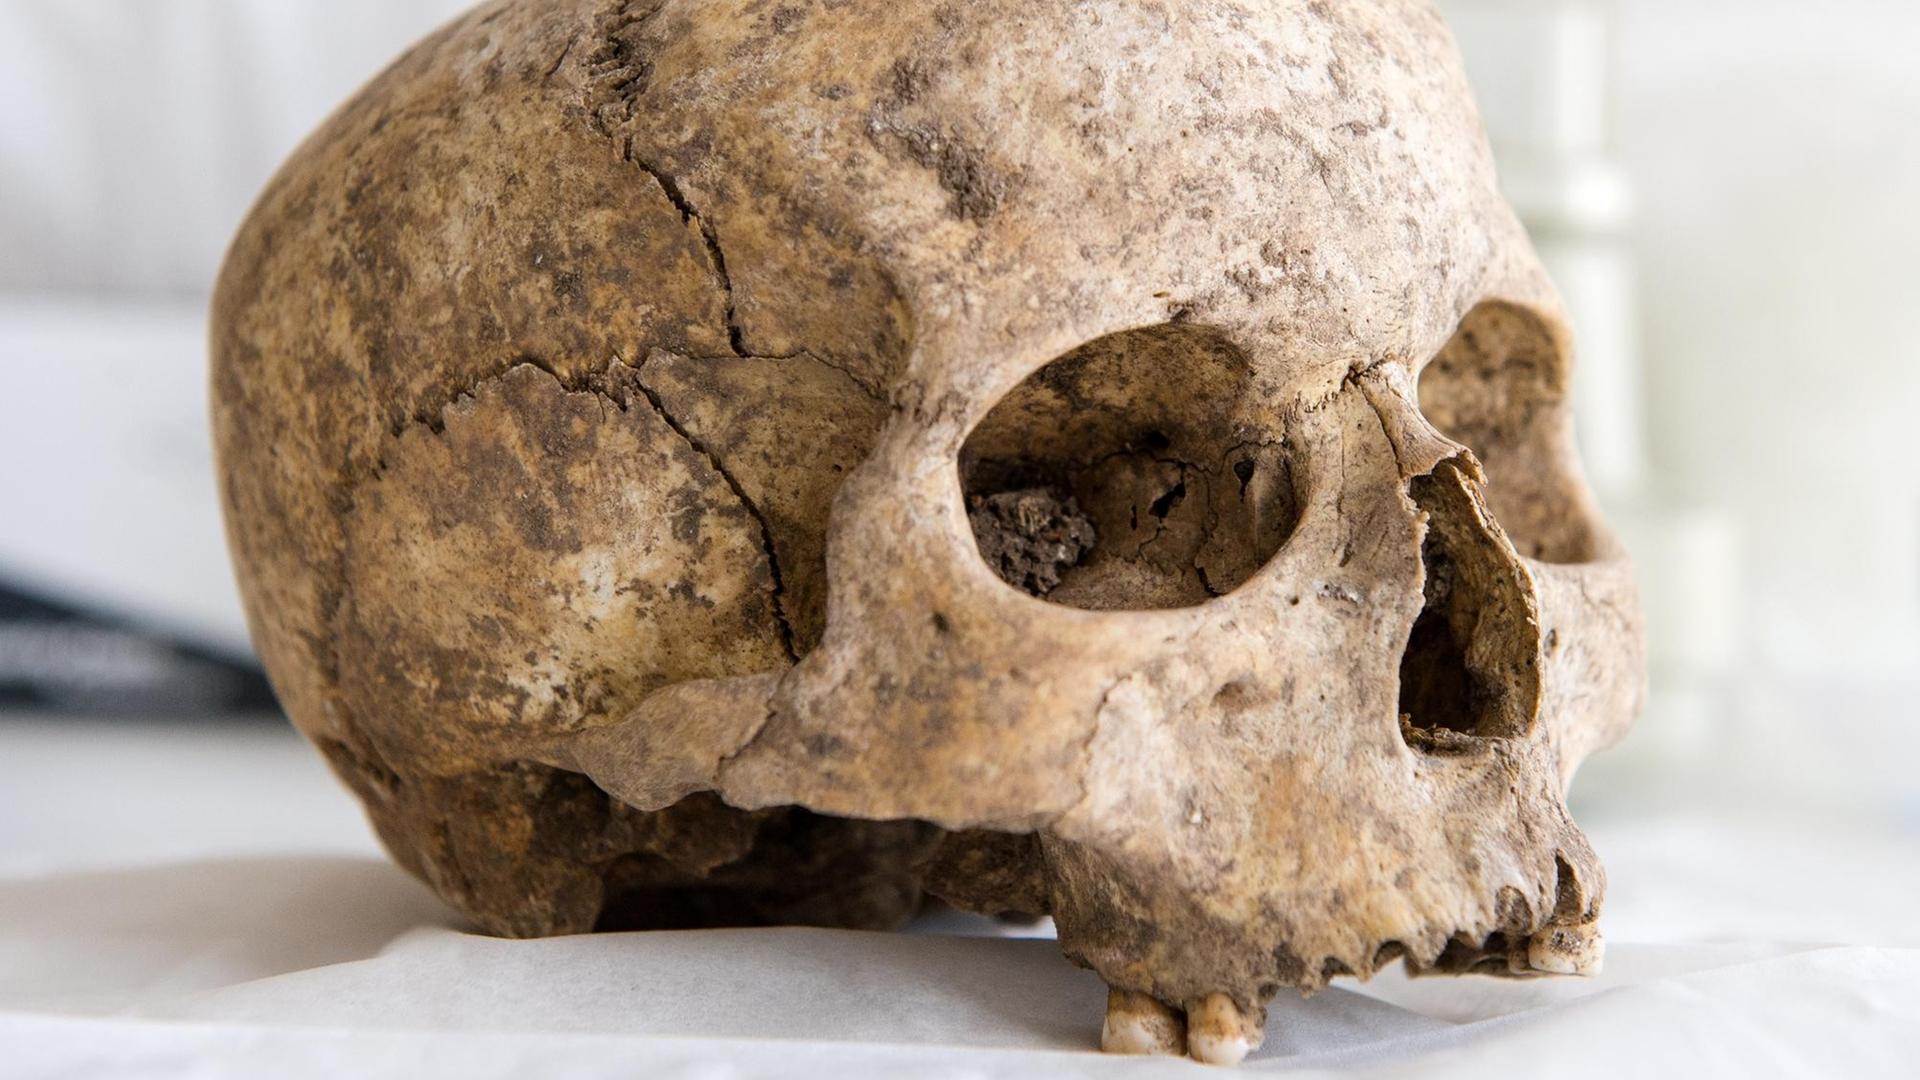 Ein bei Friedhofsausgrabungen gefundener, menschlicher Schädel von einem Toten steht am 29.02.2016 in Hamburg in einem Labor auf dem Tisch.